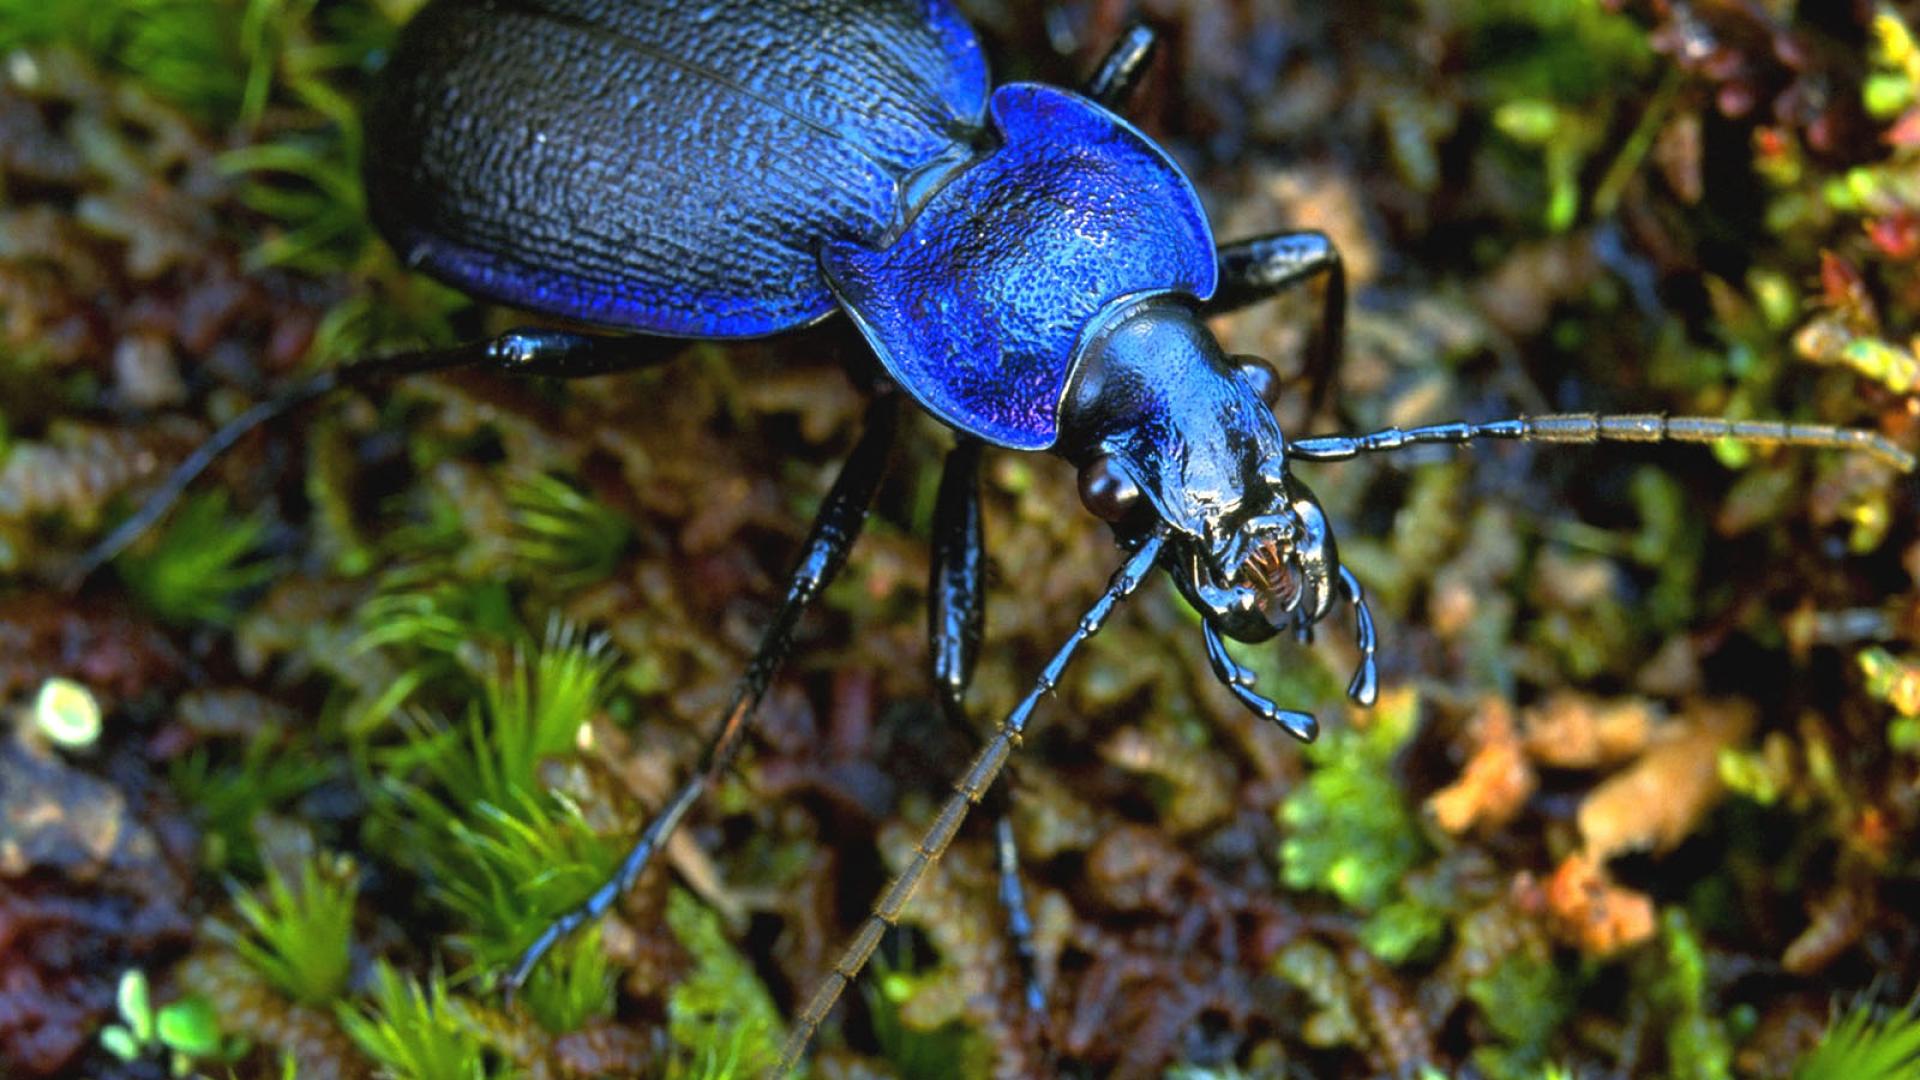 A carabid beetle